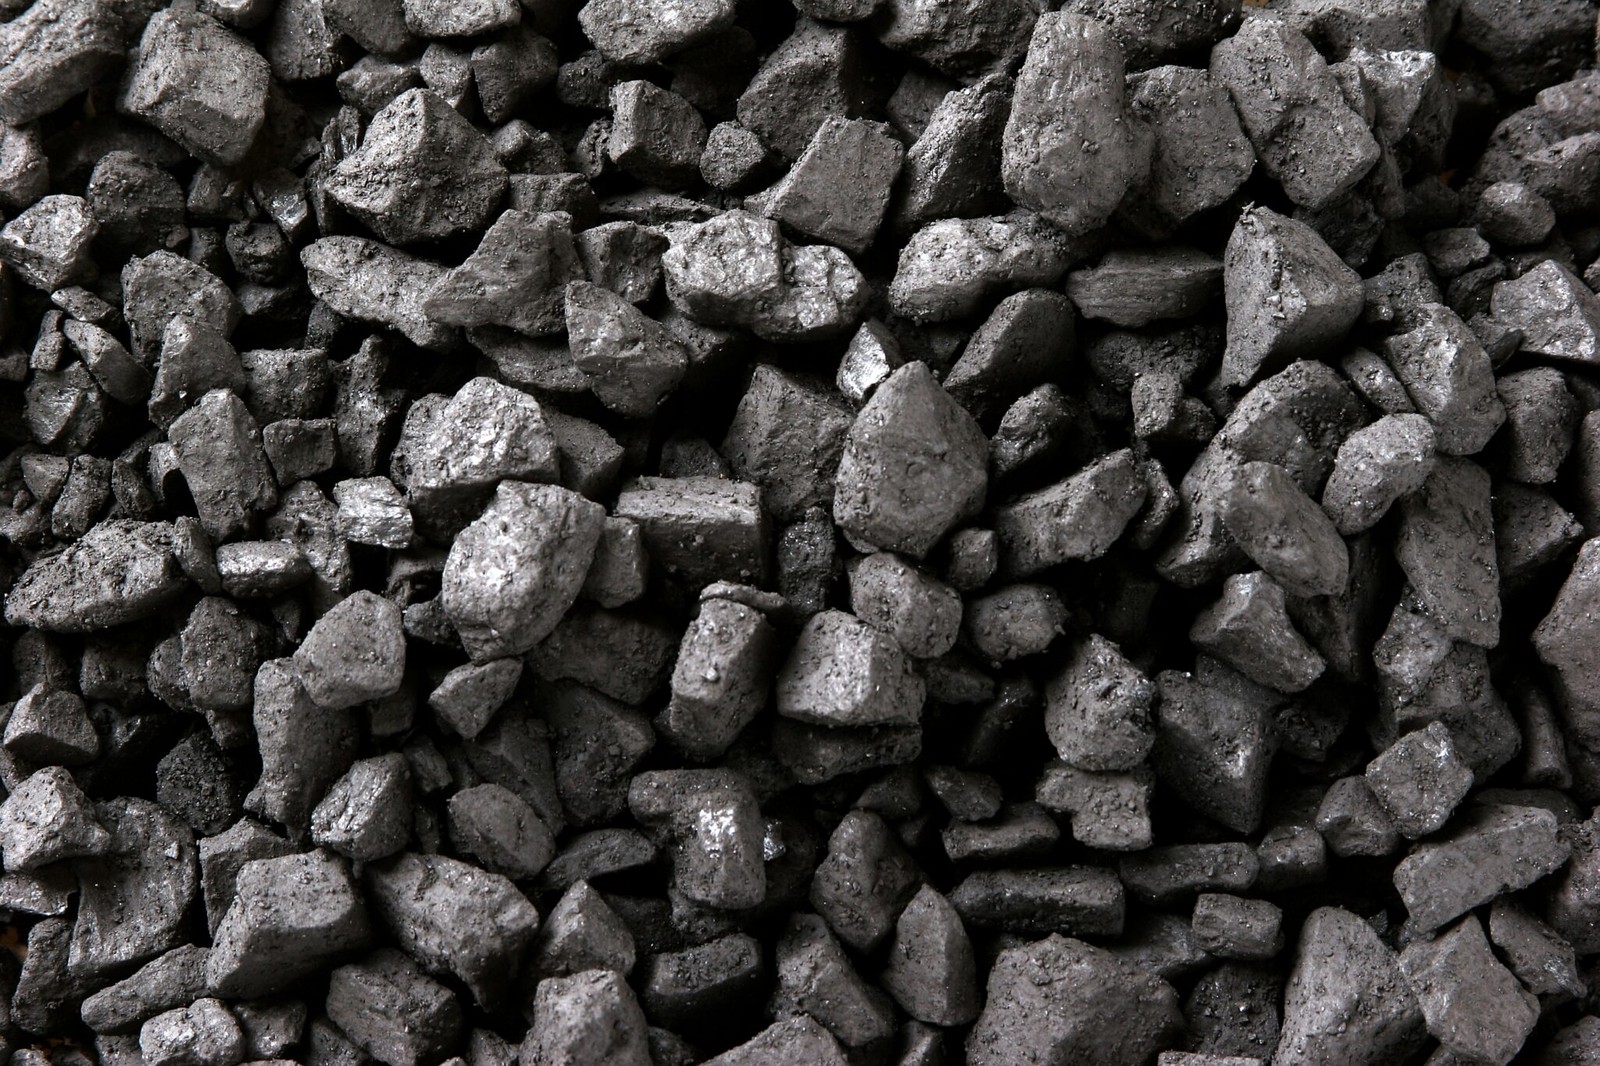 Po co spalać węgiel, jeśli można go użyć do magazynowania energii?